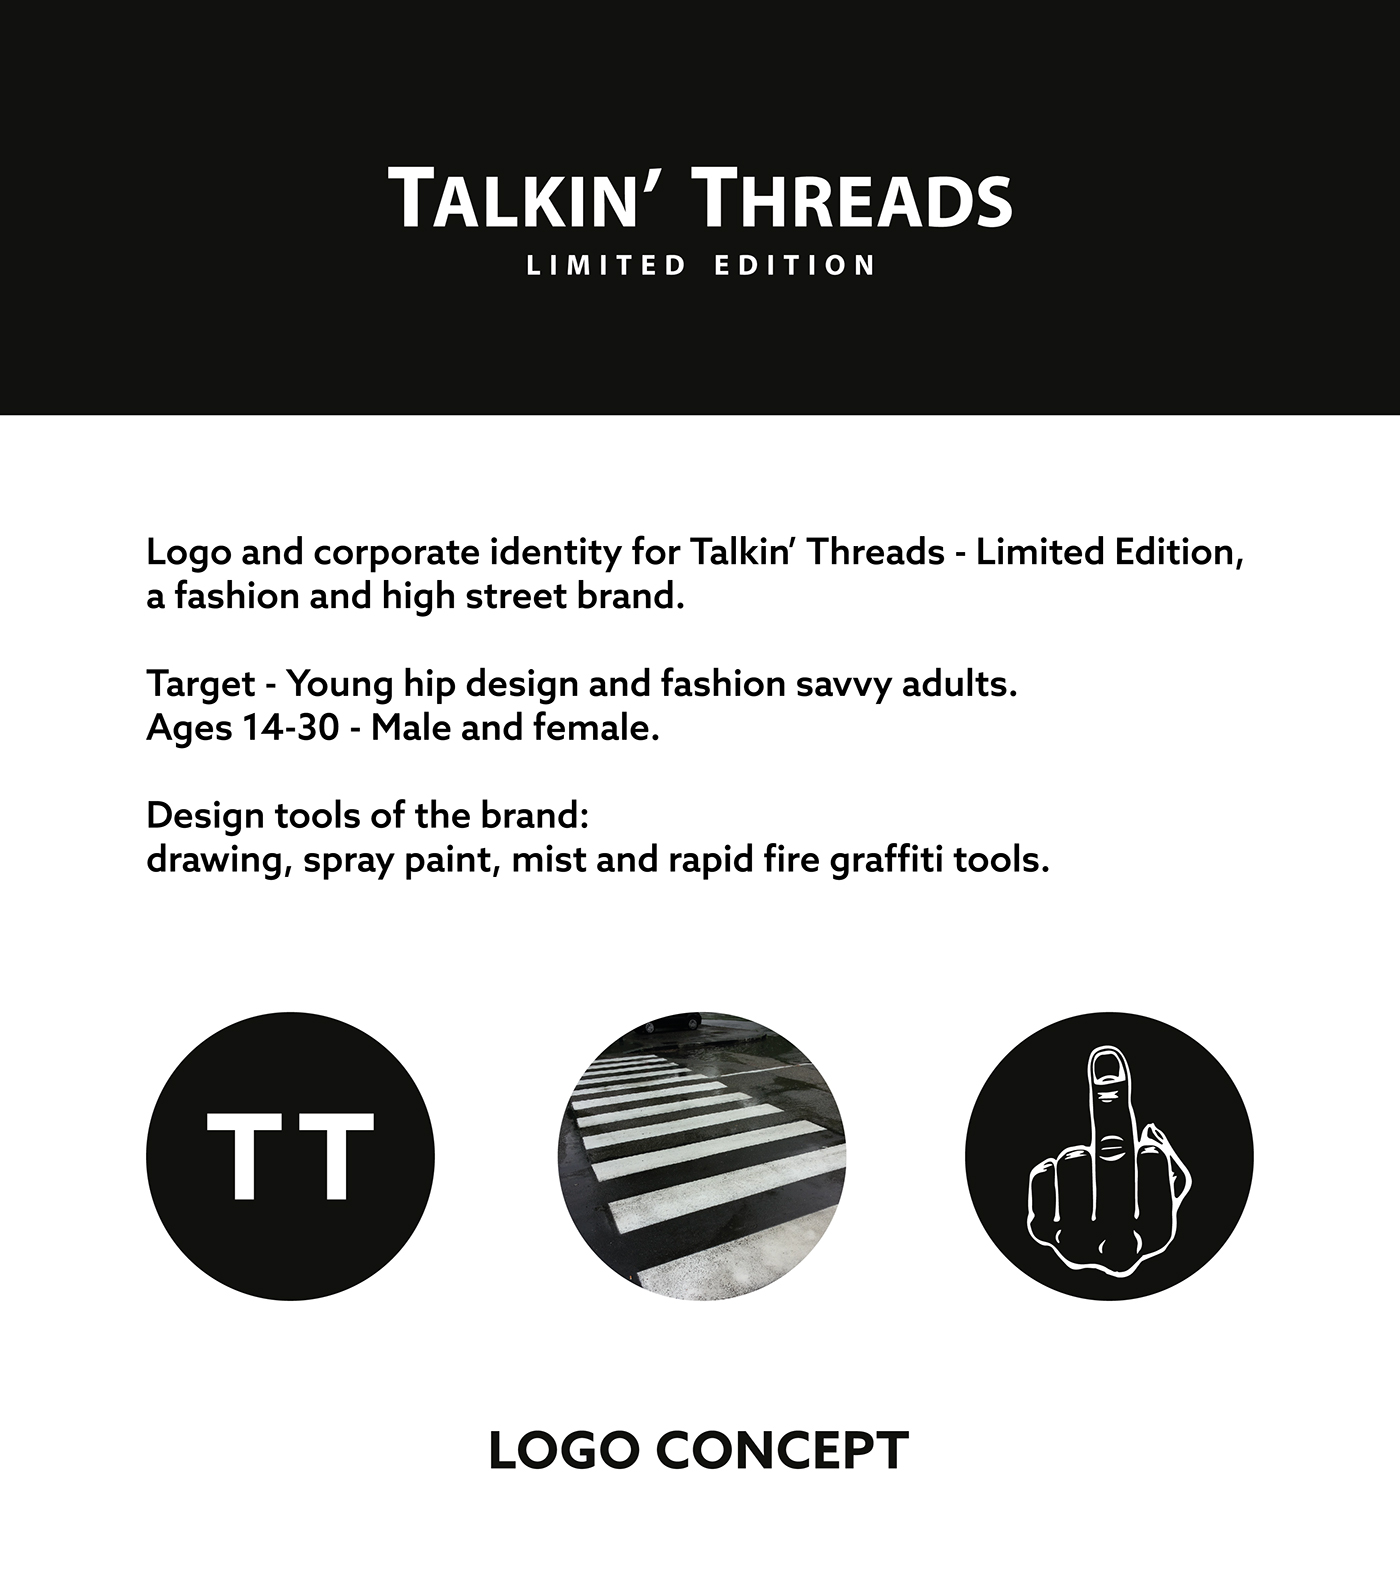 tt brand logo monogram mark Logotype type tshirt Mode Street Stationery Style finger middle finger crossing